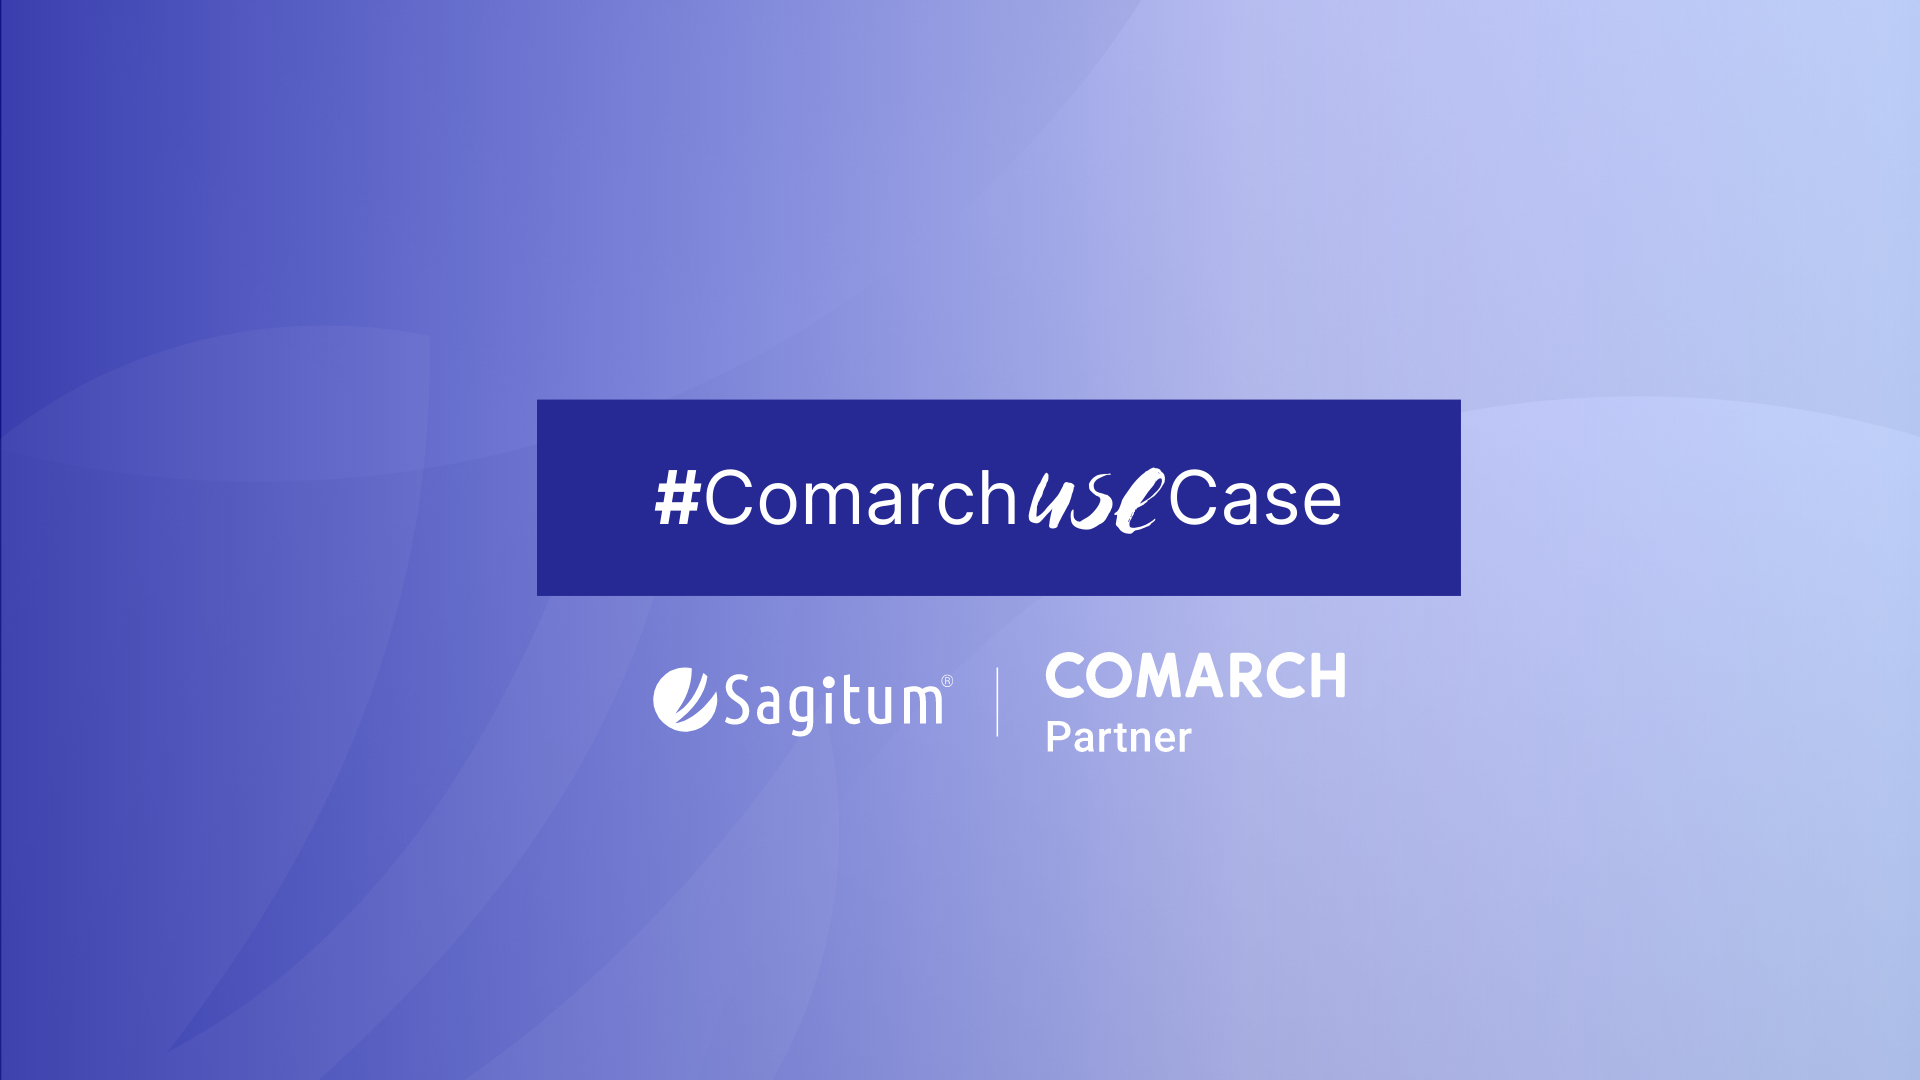 #ComarchUseCase: jak zrealizować proces presellingu za pomocą aplikacji Comarch Mobile Sprzedaż?